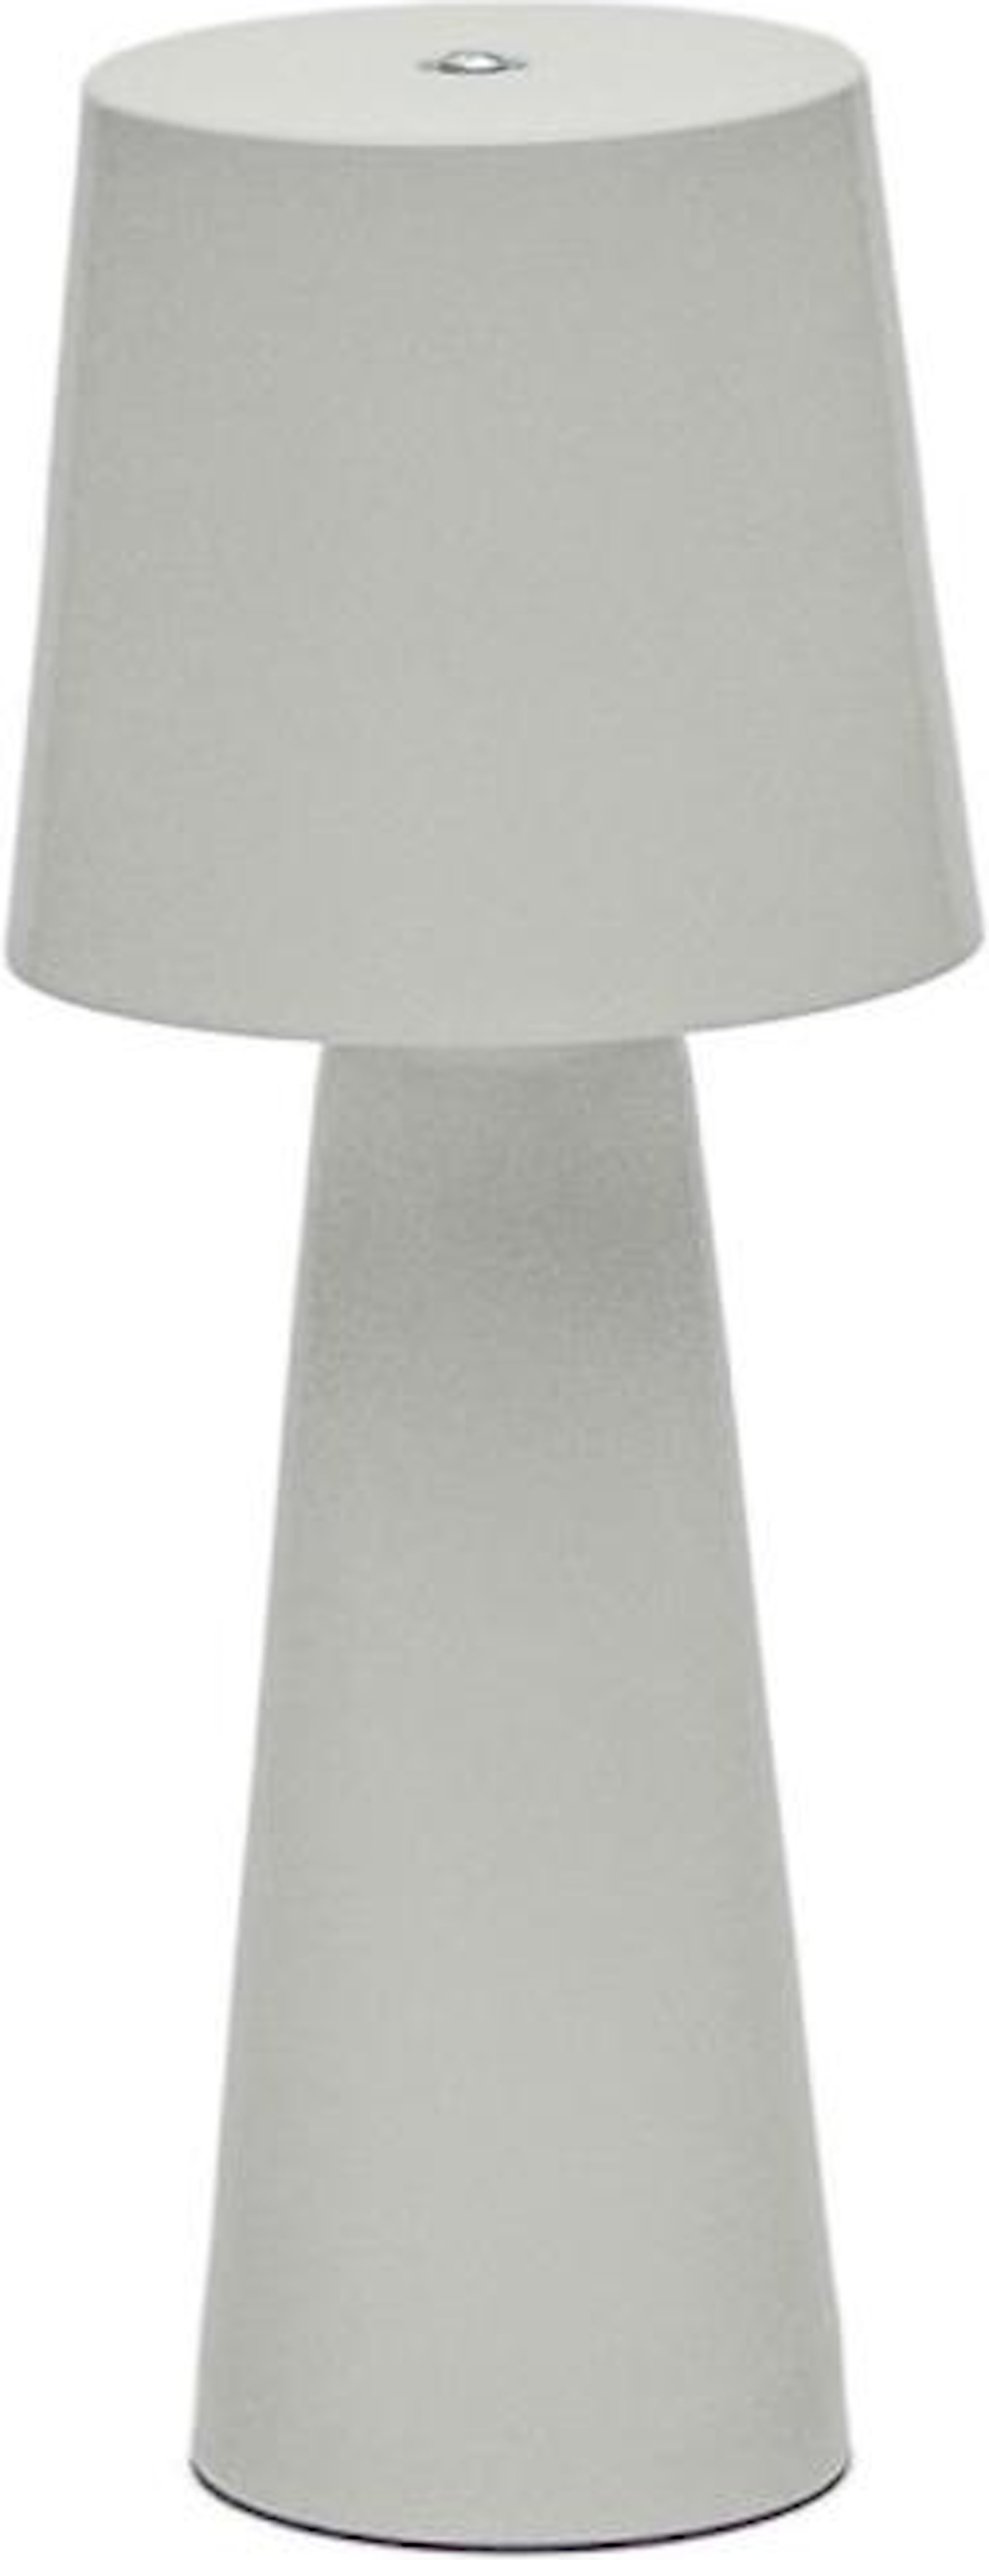 LAFORMA Arenys lille bordlampe med malet grå finish